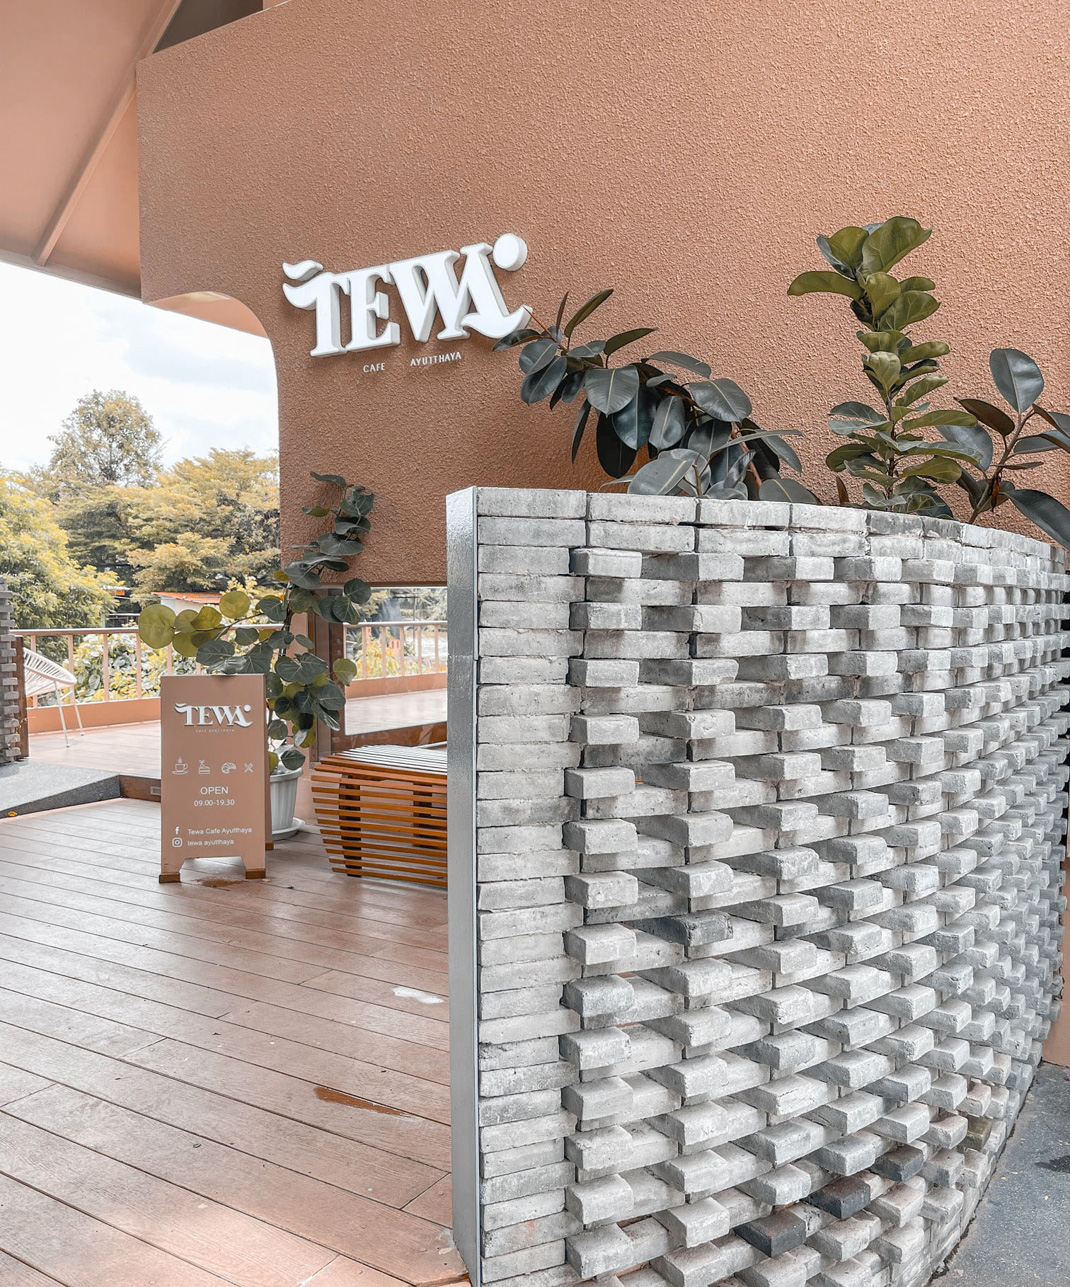 小餐厅Tewa Cafe Ayutthaya 泰国 咖啡店 独院 logo设计 vi设计 空间设计